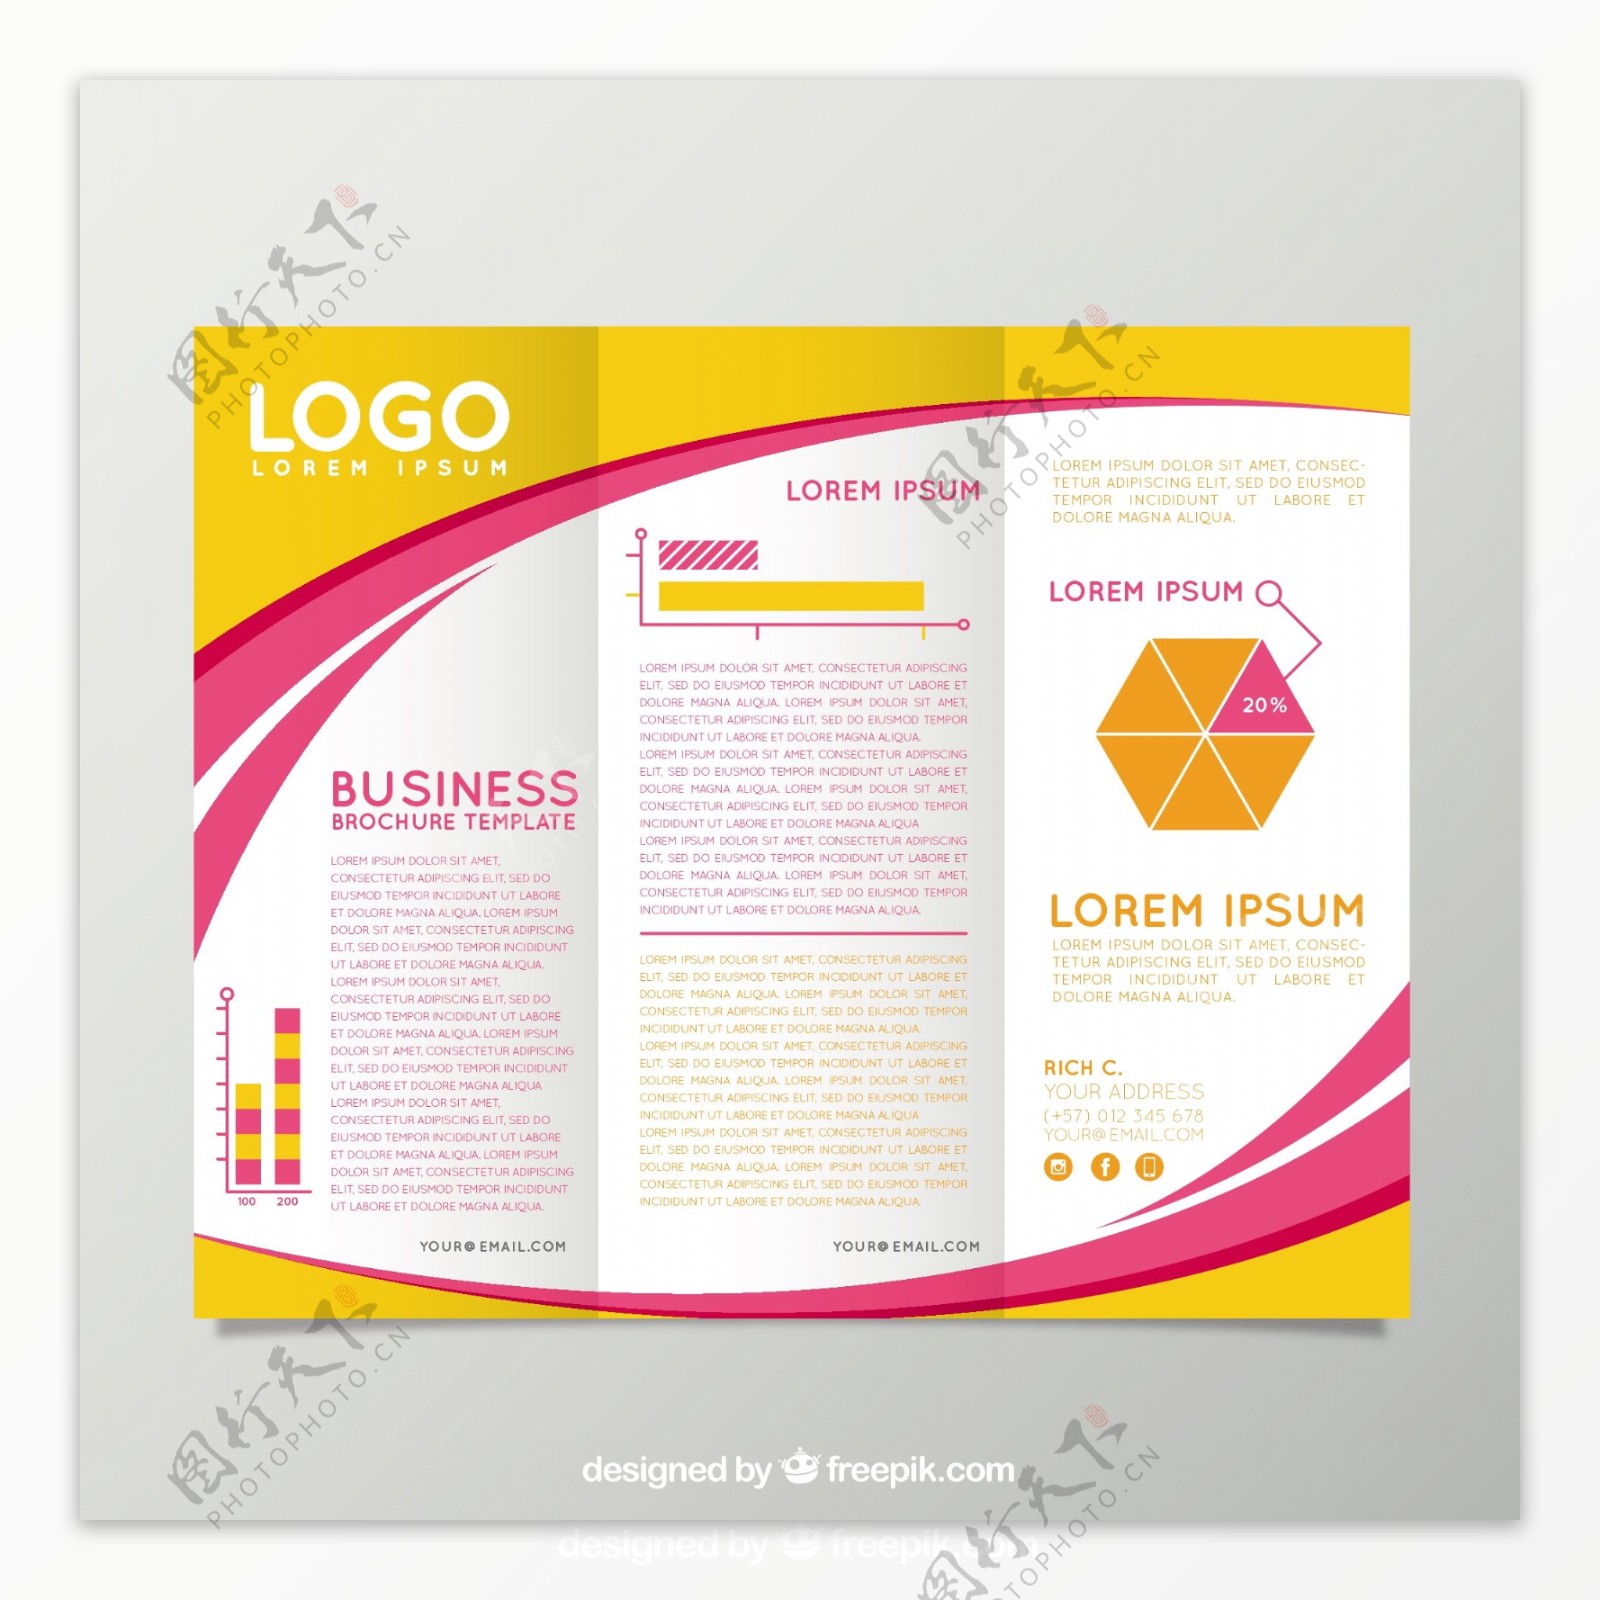 黄色和粉红色商业手册